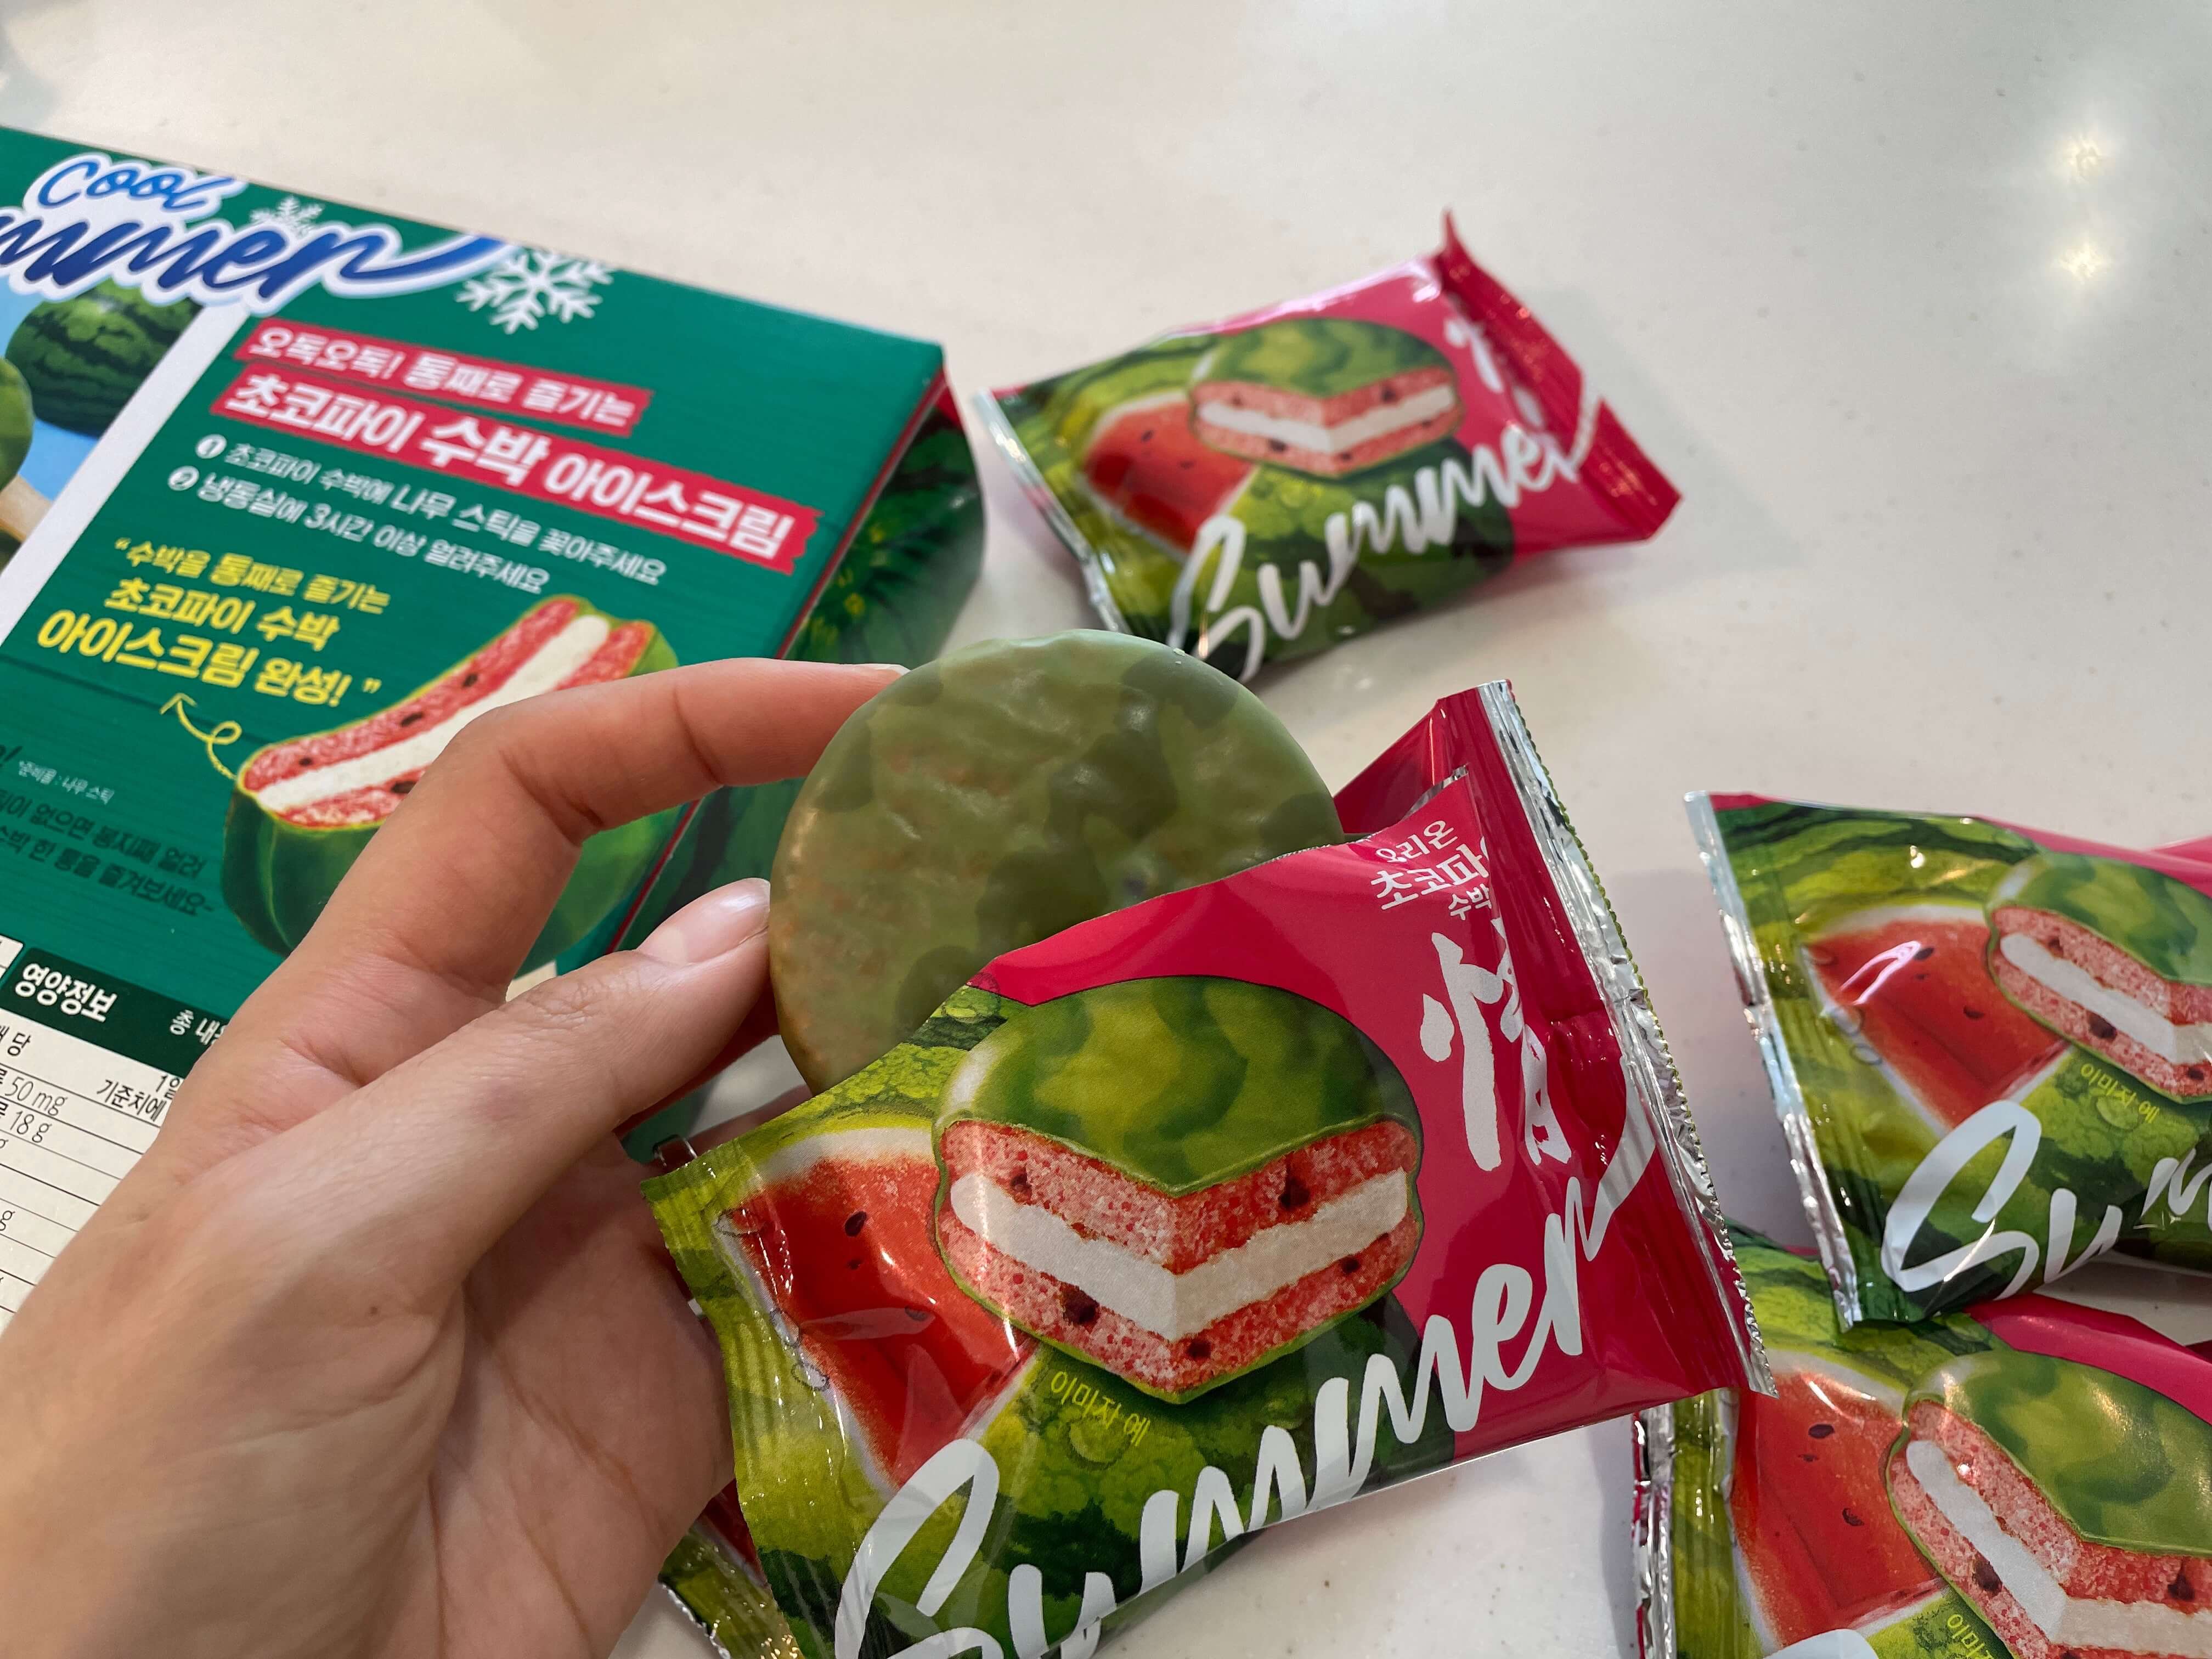 수박초코파이를 열었을 때 녹색의 초콜릿이 보이는 장면.